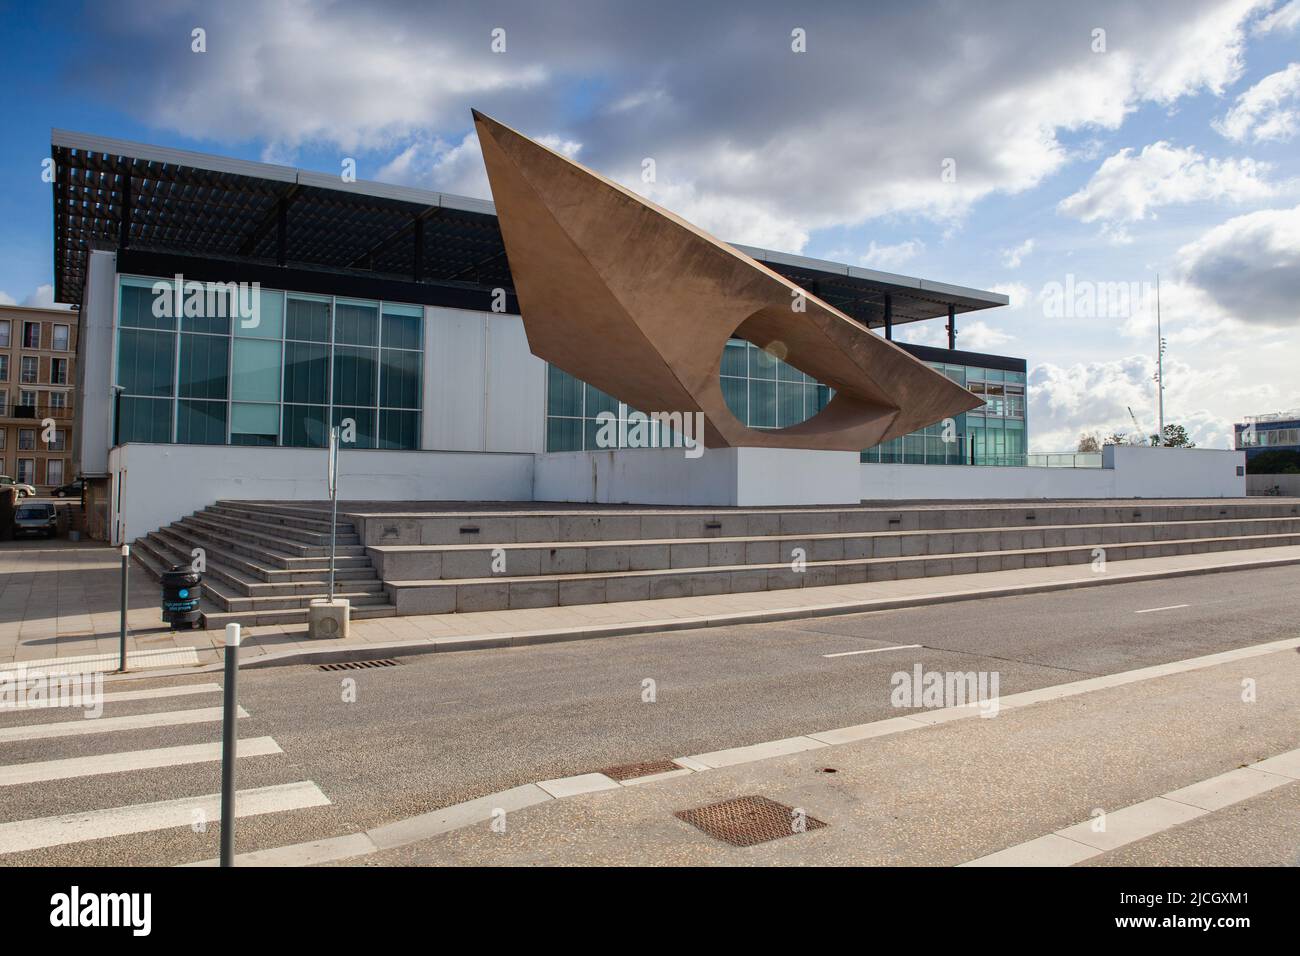 Le Havre, France - 13 octobre 2021 : Musée d'Art moderne André Malraux dans le port. Musée contenant l'une des collections les plus importantes des nations o Banque D'Images